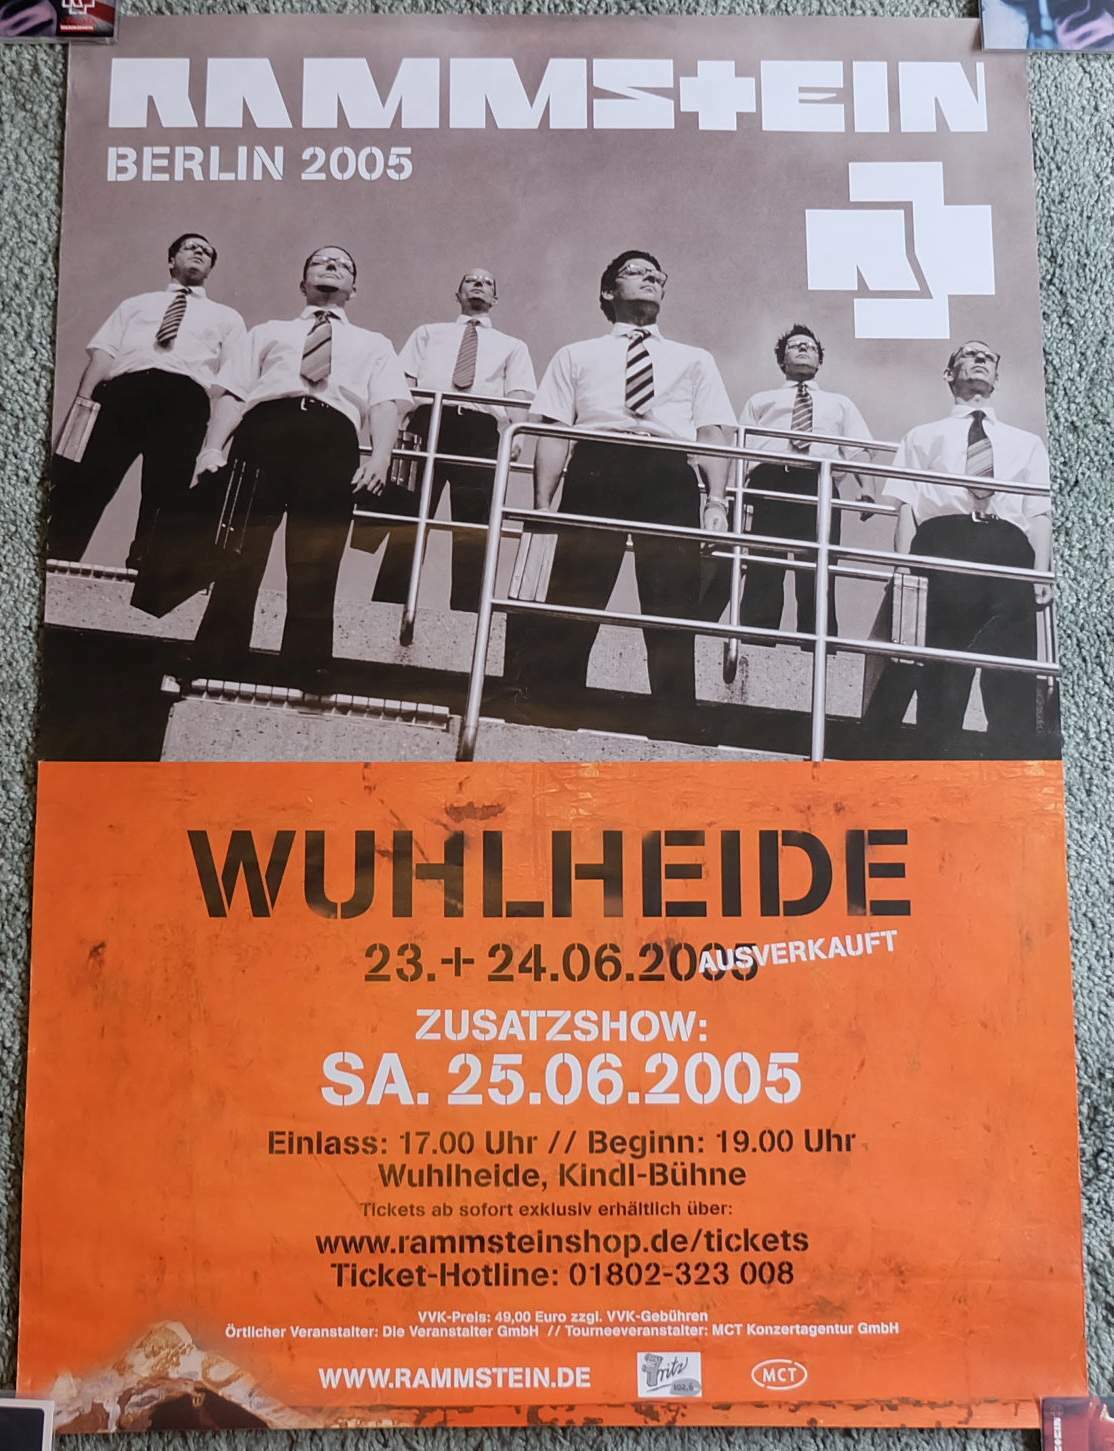 Rammstein Concert Poster Travel Travel Tour 25.06.2005 Dodatkowy pokaz Berlin R+ Mother Tania, nowa praca